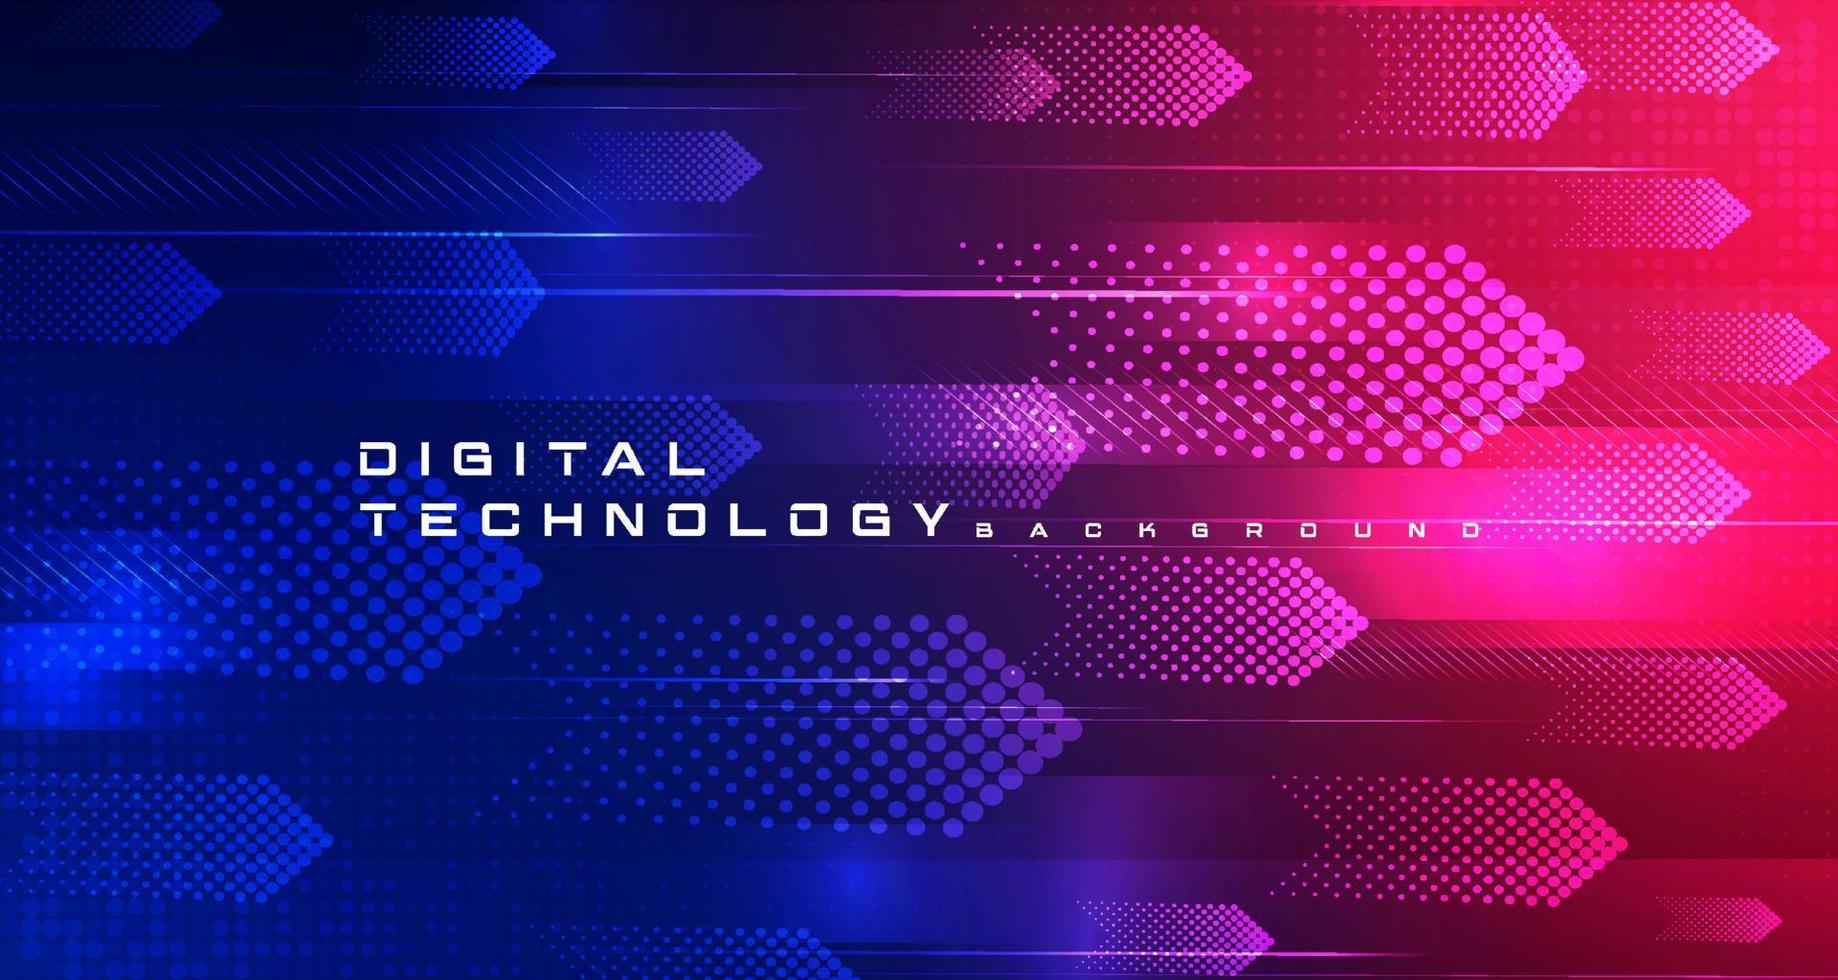 abstrakte digitale technologie futuristische schaltung blauer rosa hintergrund, cyber-wissenschafts-tech-pfeil, innovation zukunft ai große daten, globale internet-netzwerkverbindung, wolken-hi-tech-illustrationsvektor vektor